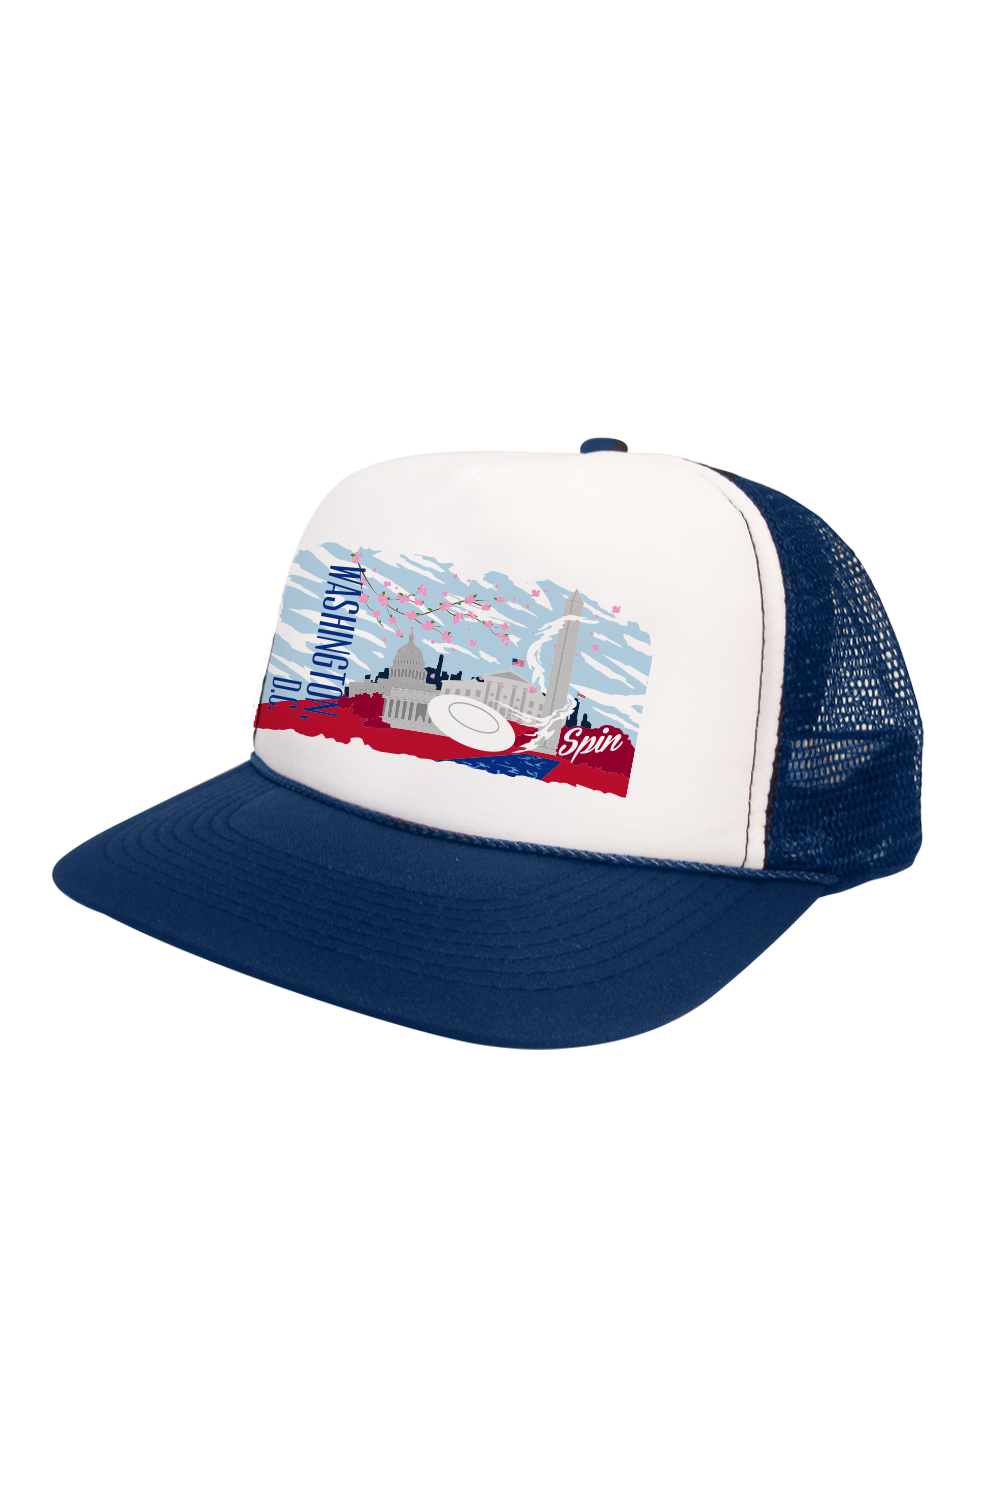 Washington D.C. Foam Trucker Hat